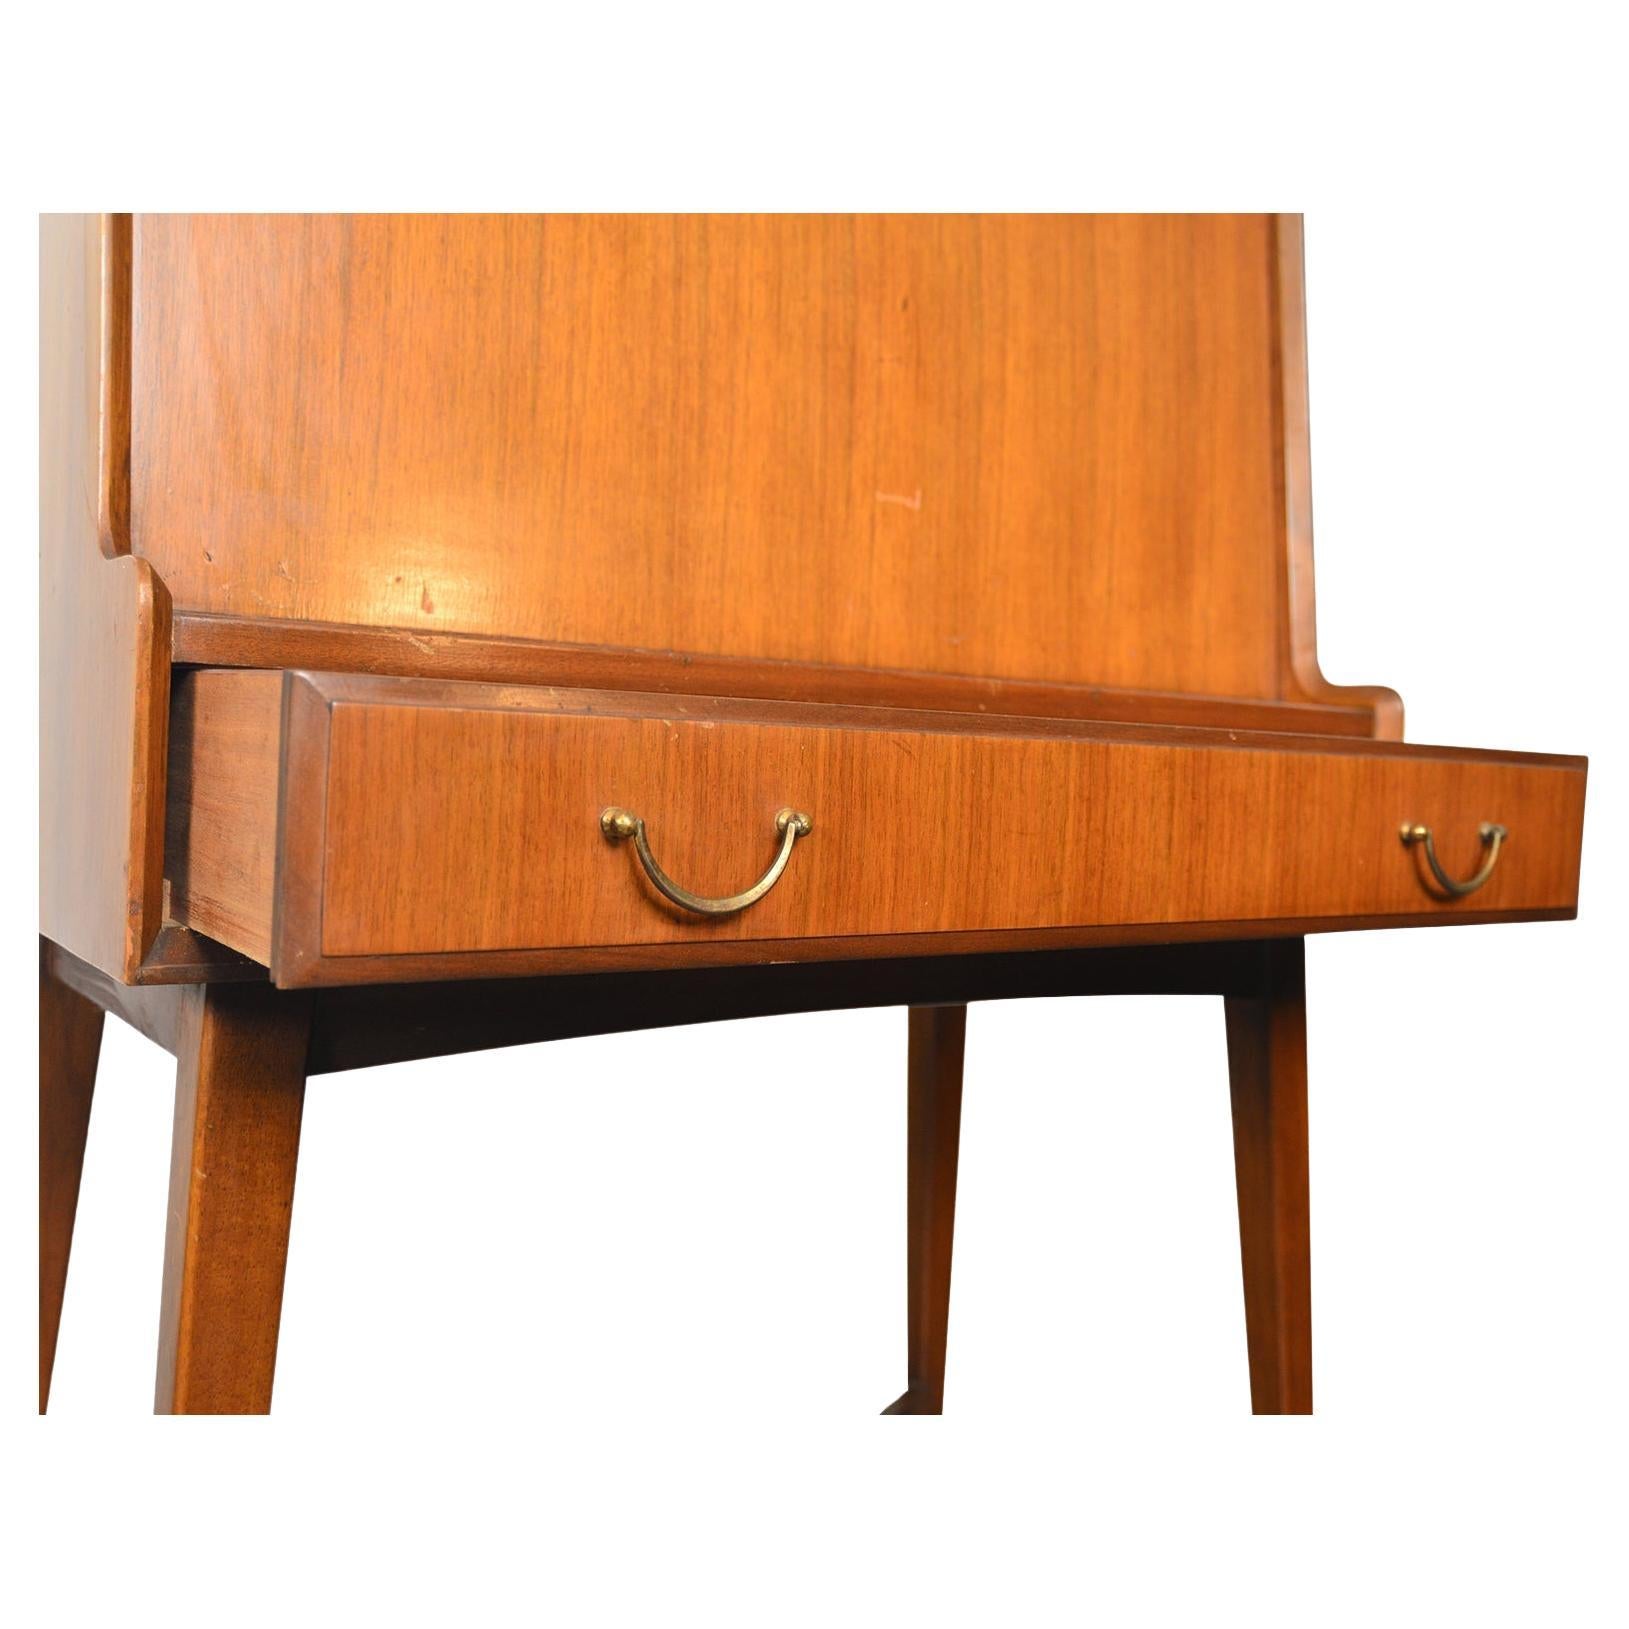 Herkunft: England
Designer: Unbekannt
Hersteller: Wrighton Möbel
Epoche: 1950er Jahre
Materialien: Afromosia
Abmessungen: 30